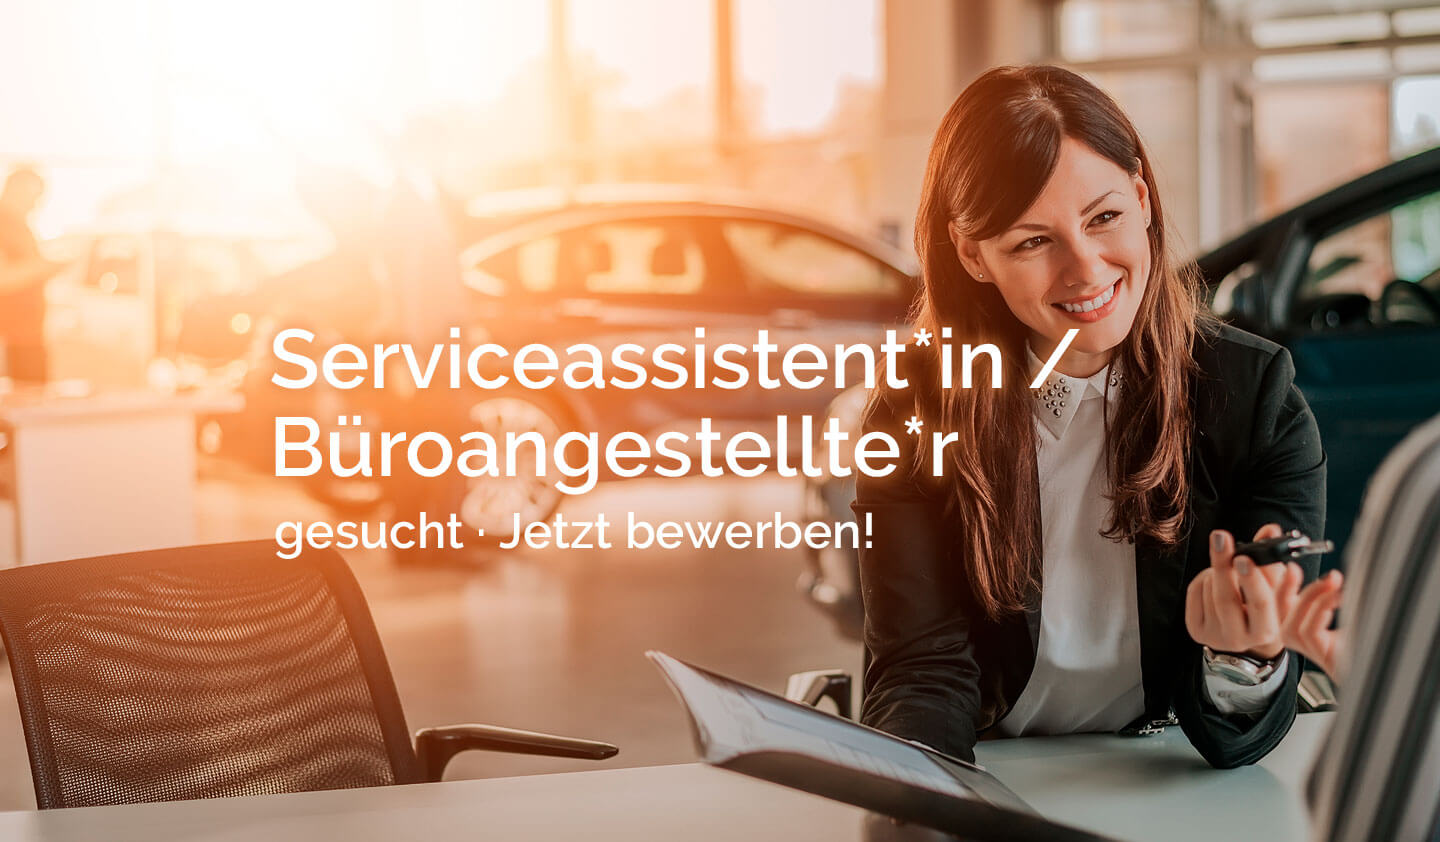 Das Autohaus Rau sucht Serviceassistenz und Büroangestellte. Das Opel Autohaus sucht DICH!